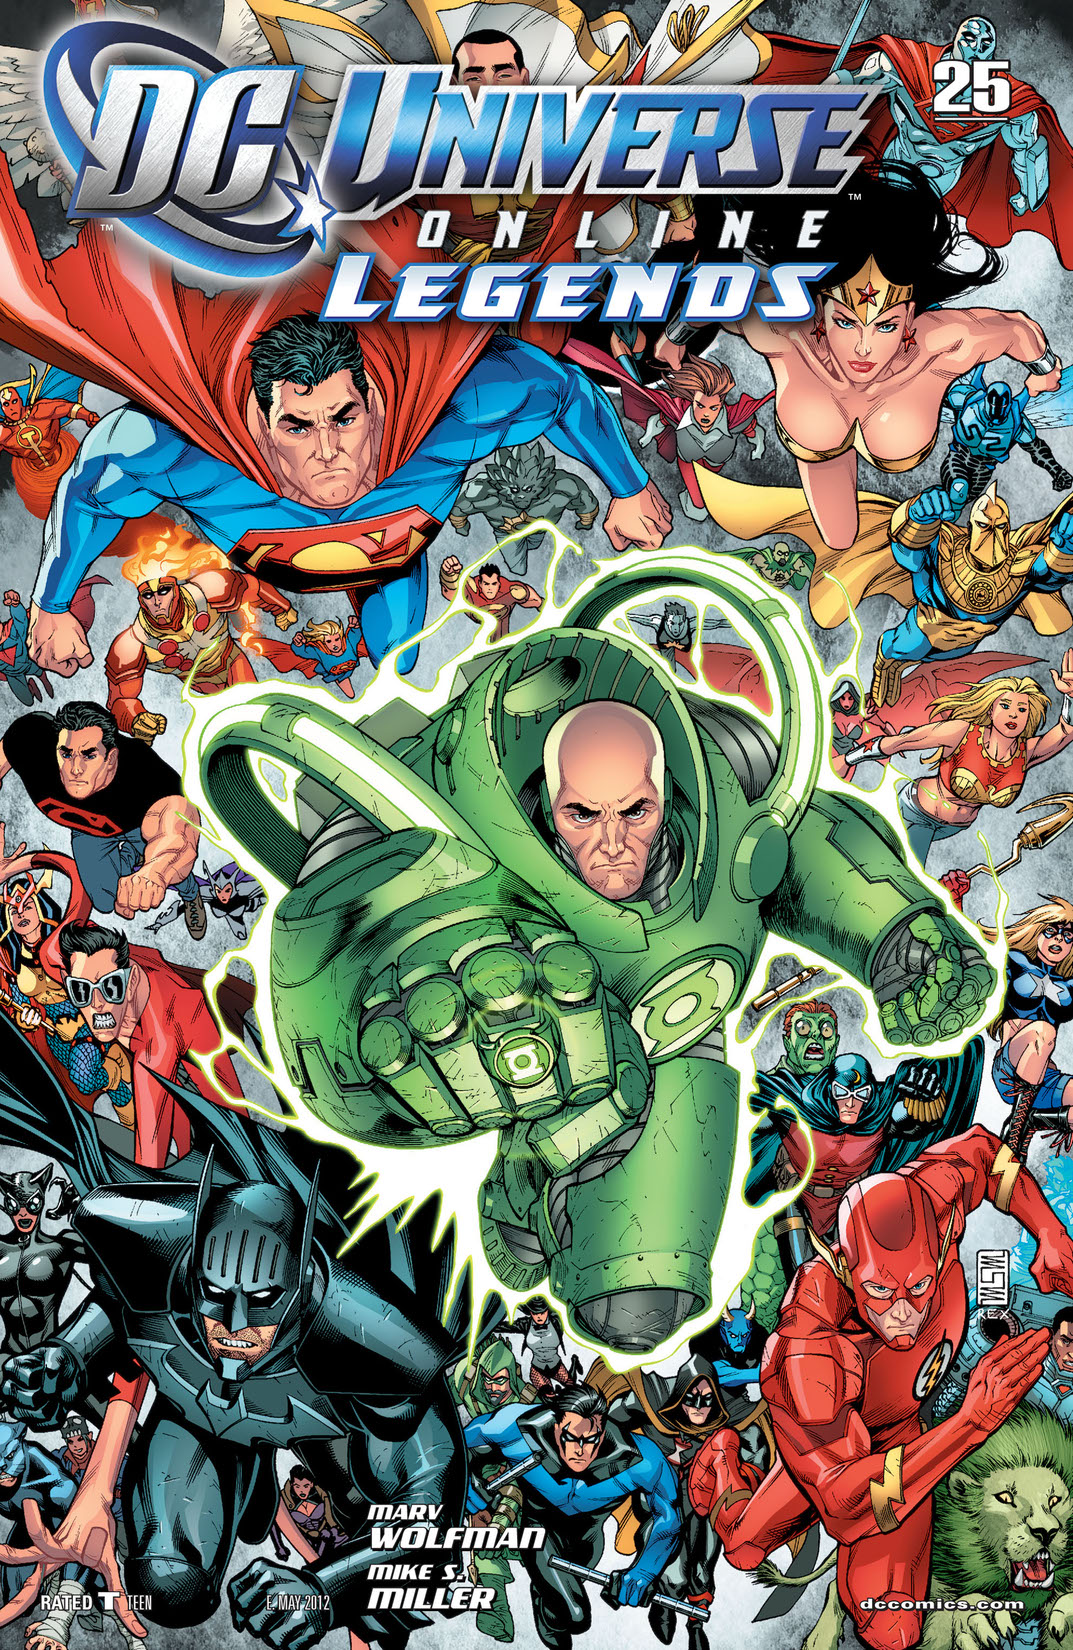 DC Universe Online Legends #25 preview images